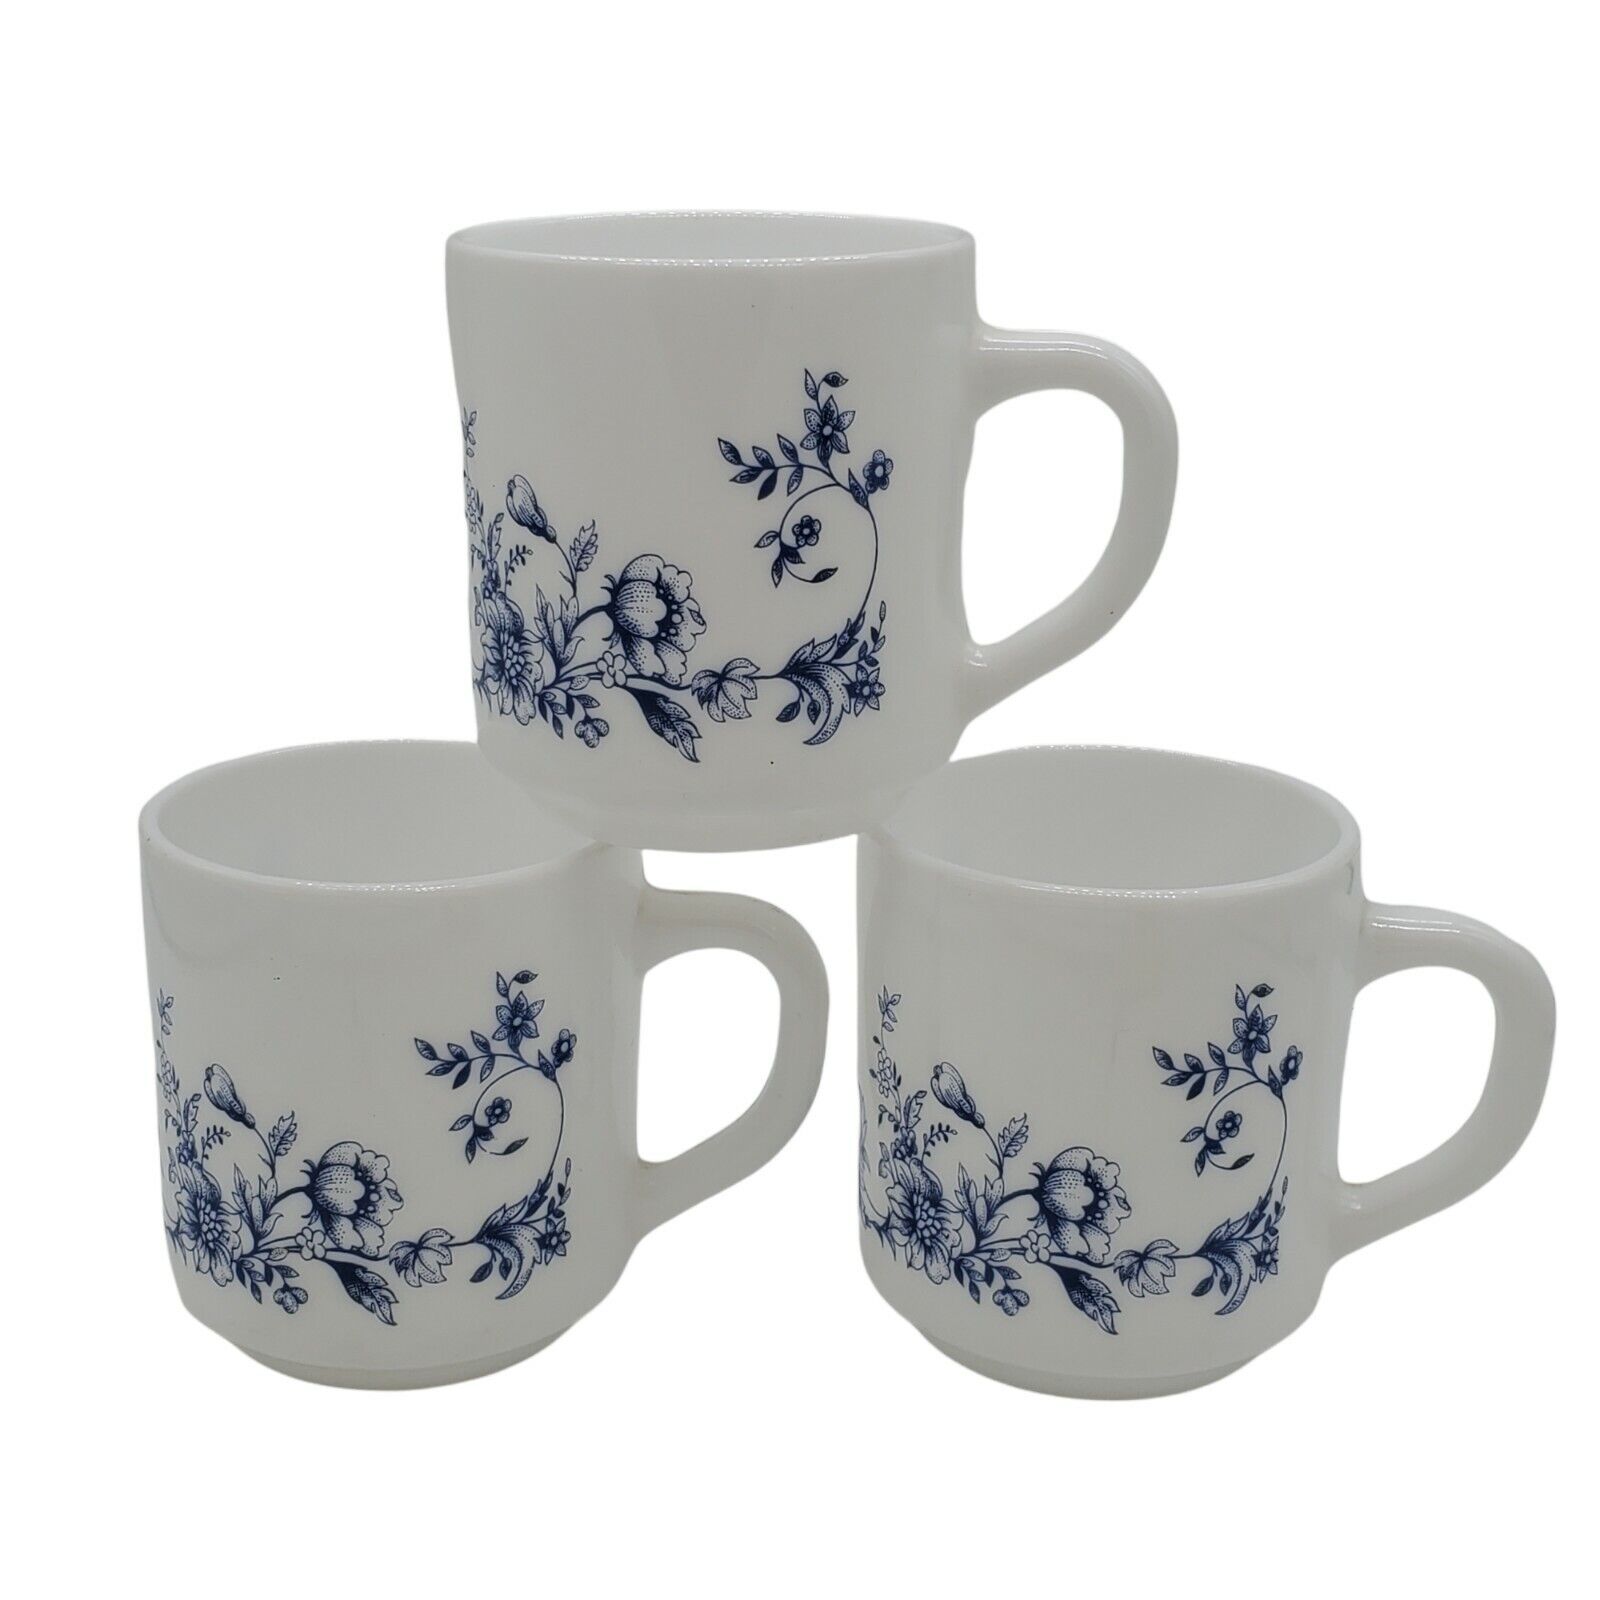 VTG Arcopal France Blue Floral Coffee Mug/Cup White Milk Glass Glenwood Set of 3